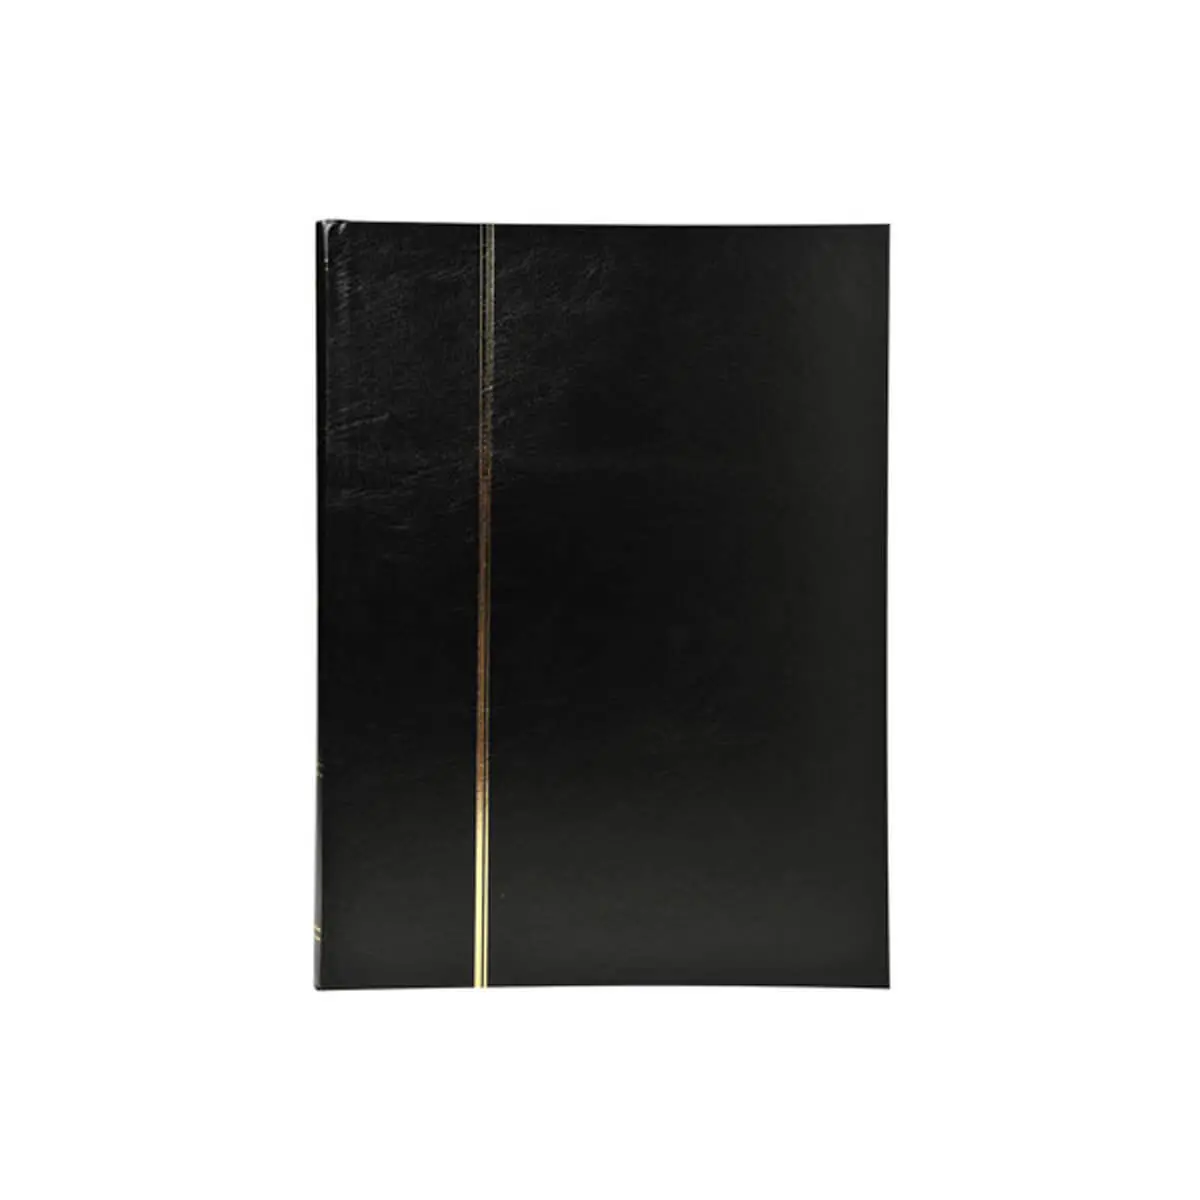 Album de timbres simili-cuir 48 pages noires - 22,5x30,5 cm - Noir - EXACOMPTA photo du produit